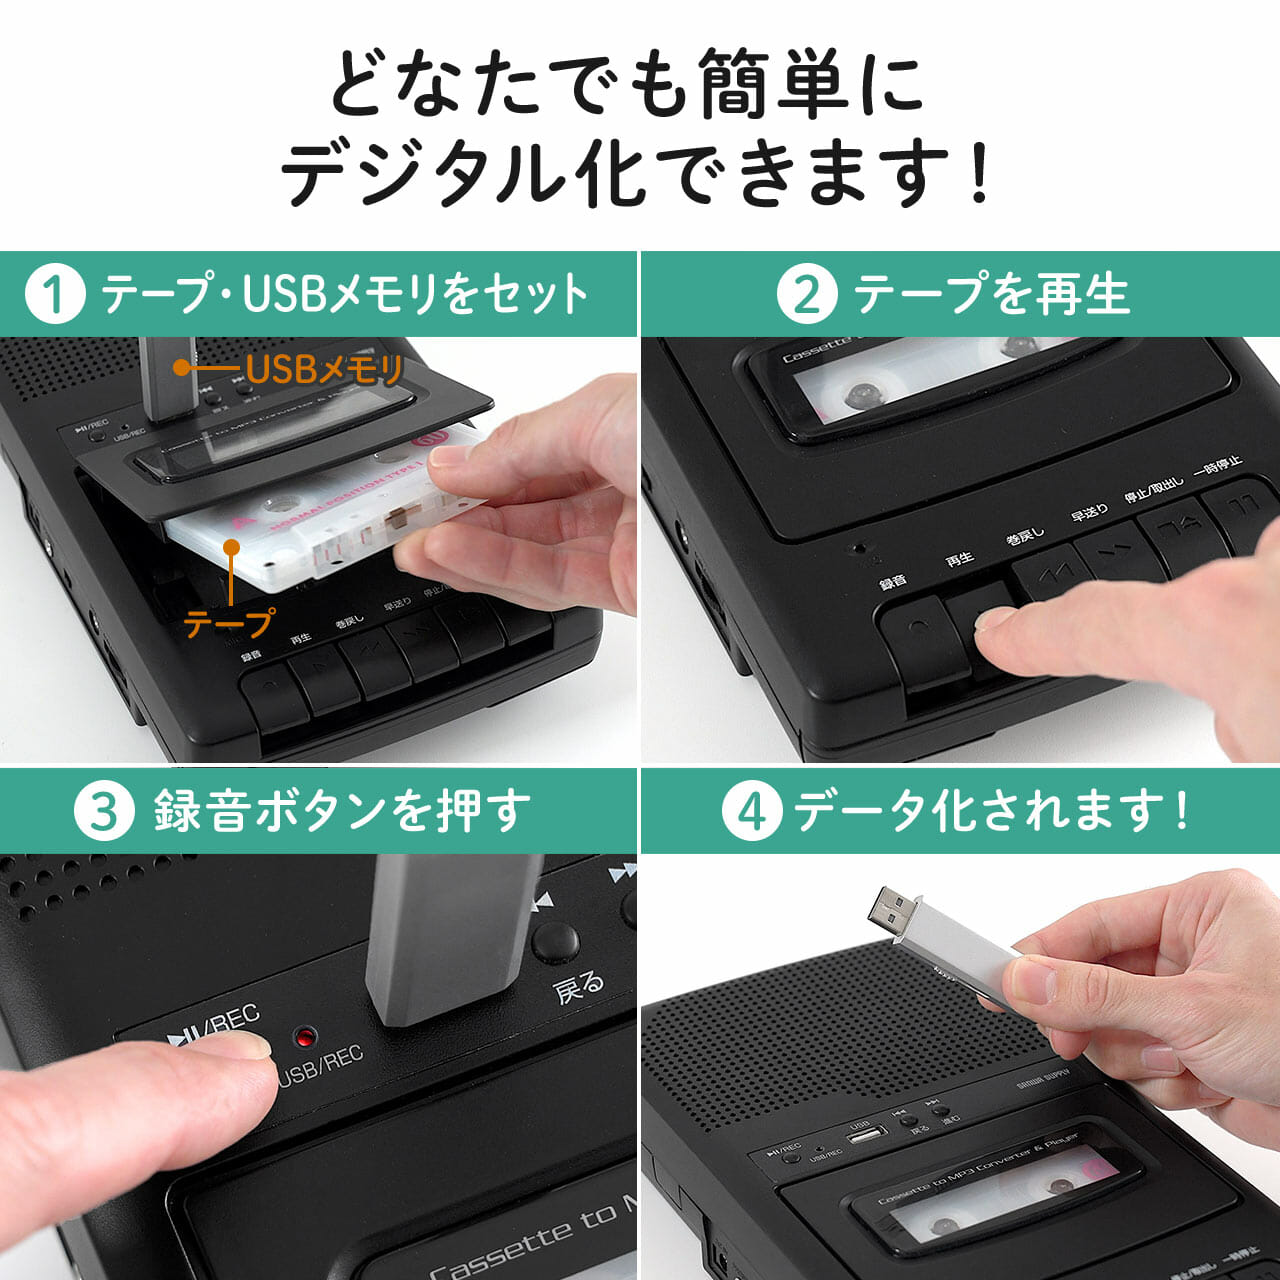 カセットテープデジタル化の方法④サンワダイレクト カセットテープデジタル化の使い方